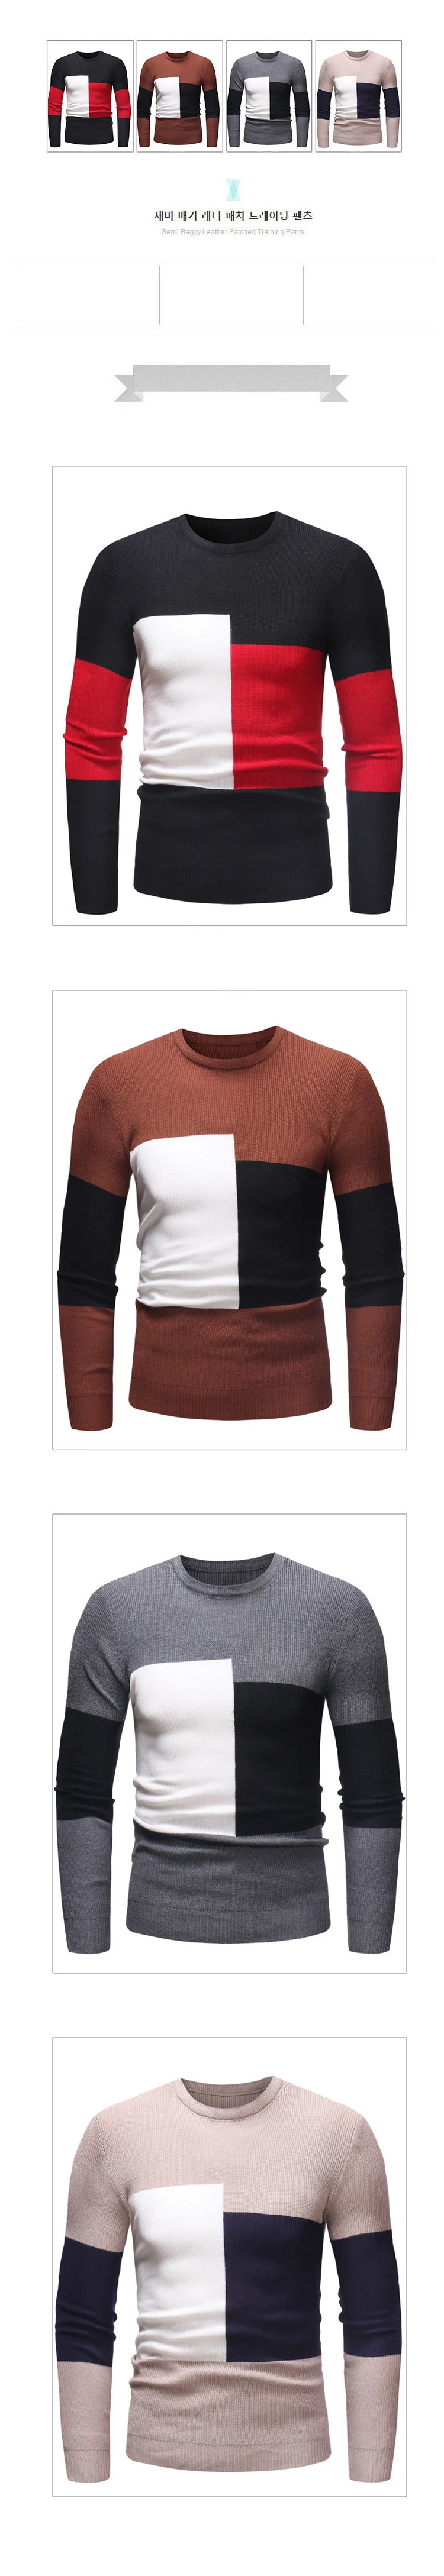 Повседневный мужской свитер, одежда, осенний зимний свитер, тонкий модный тренд, мужская одежда